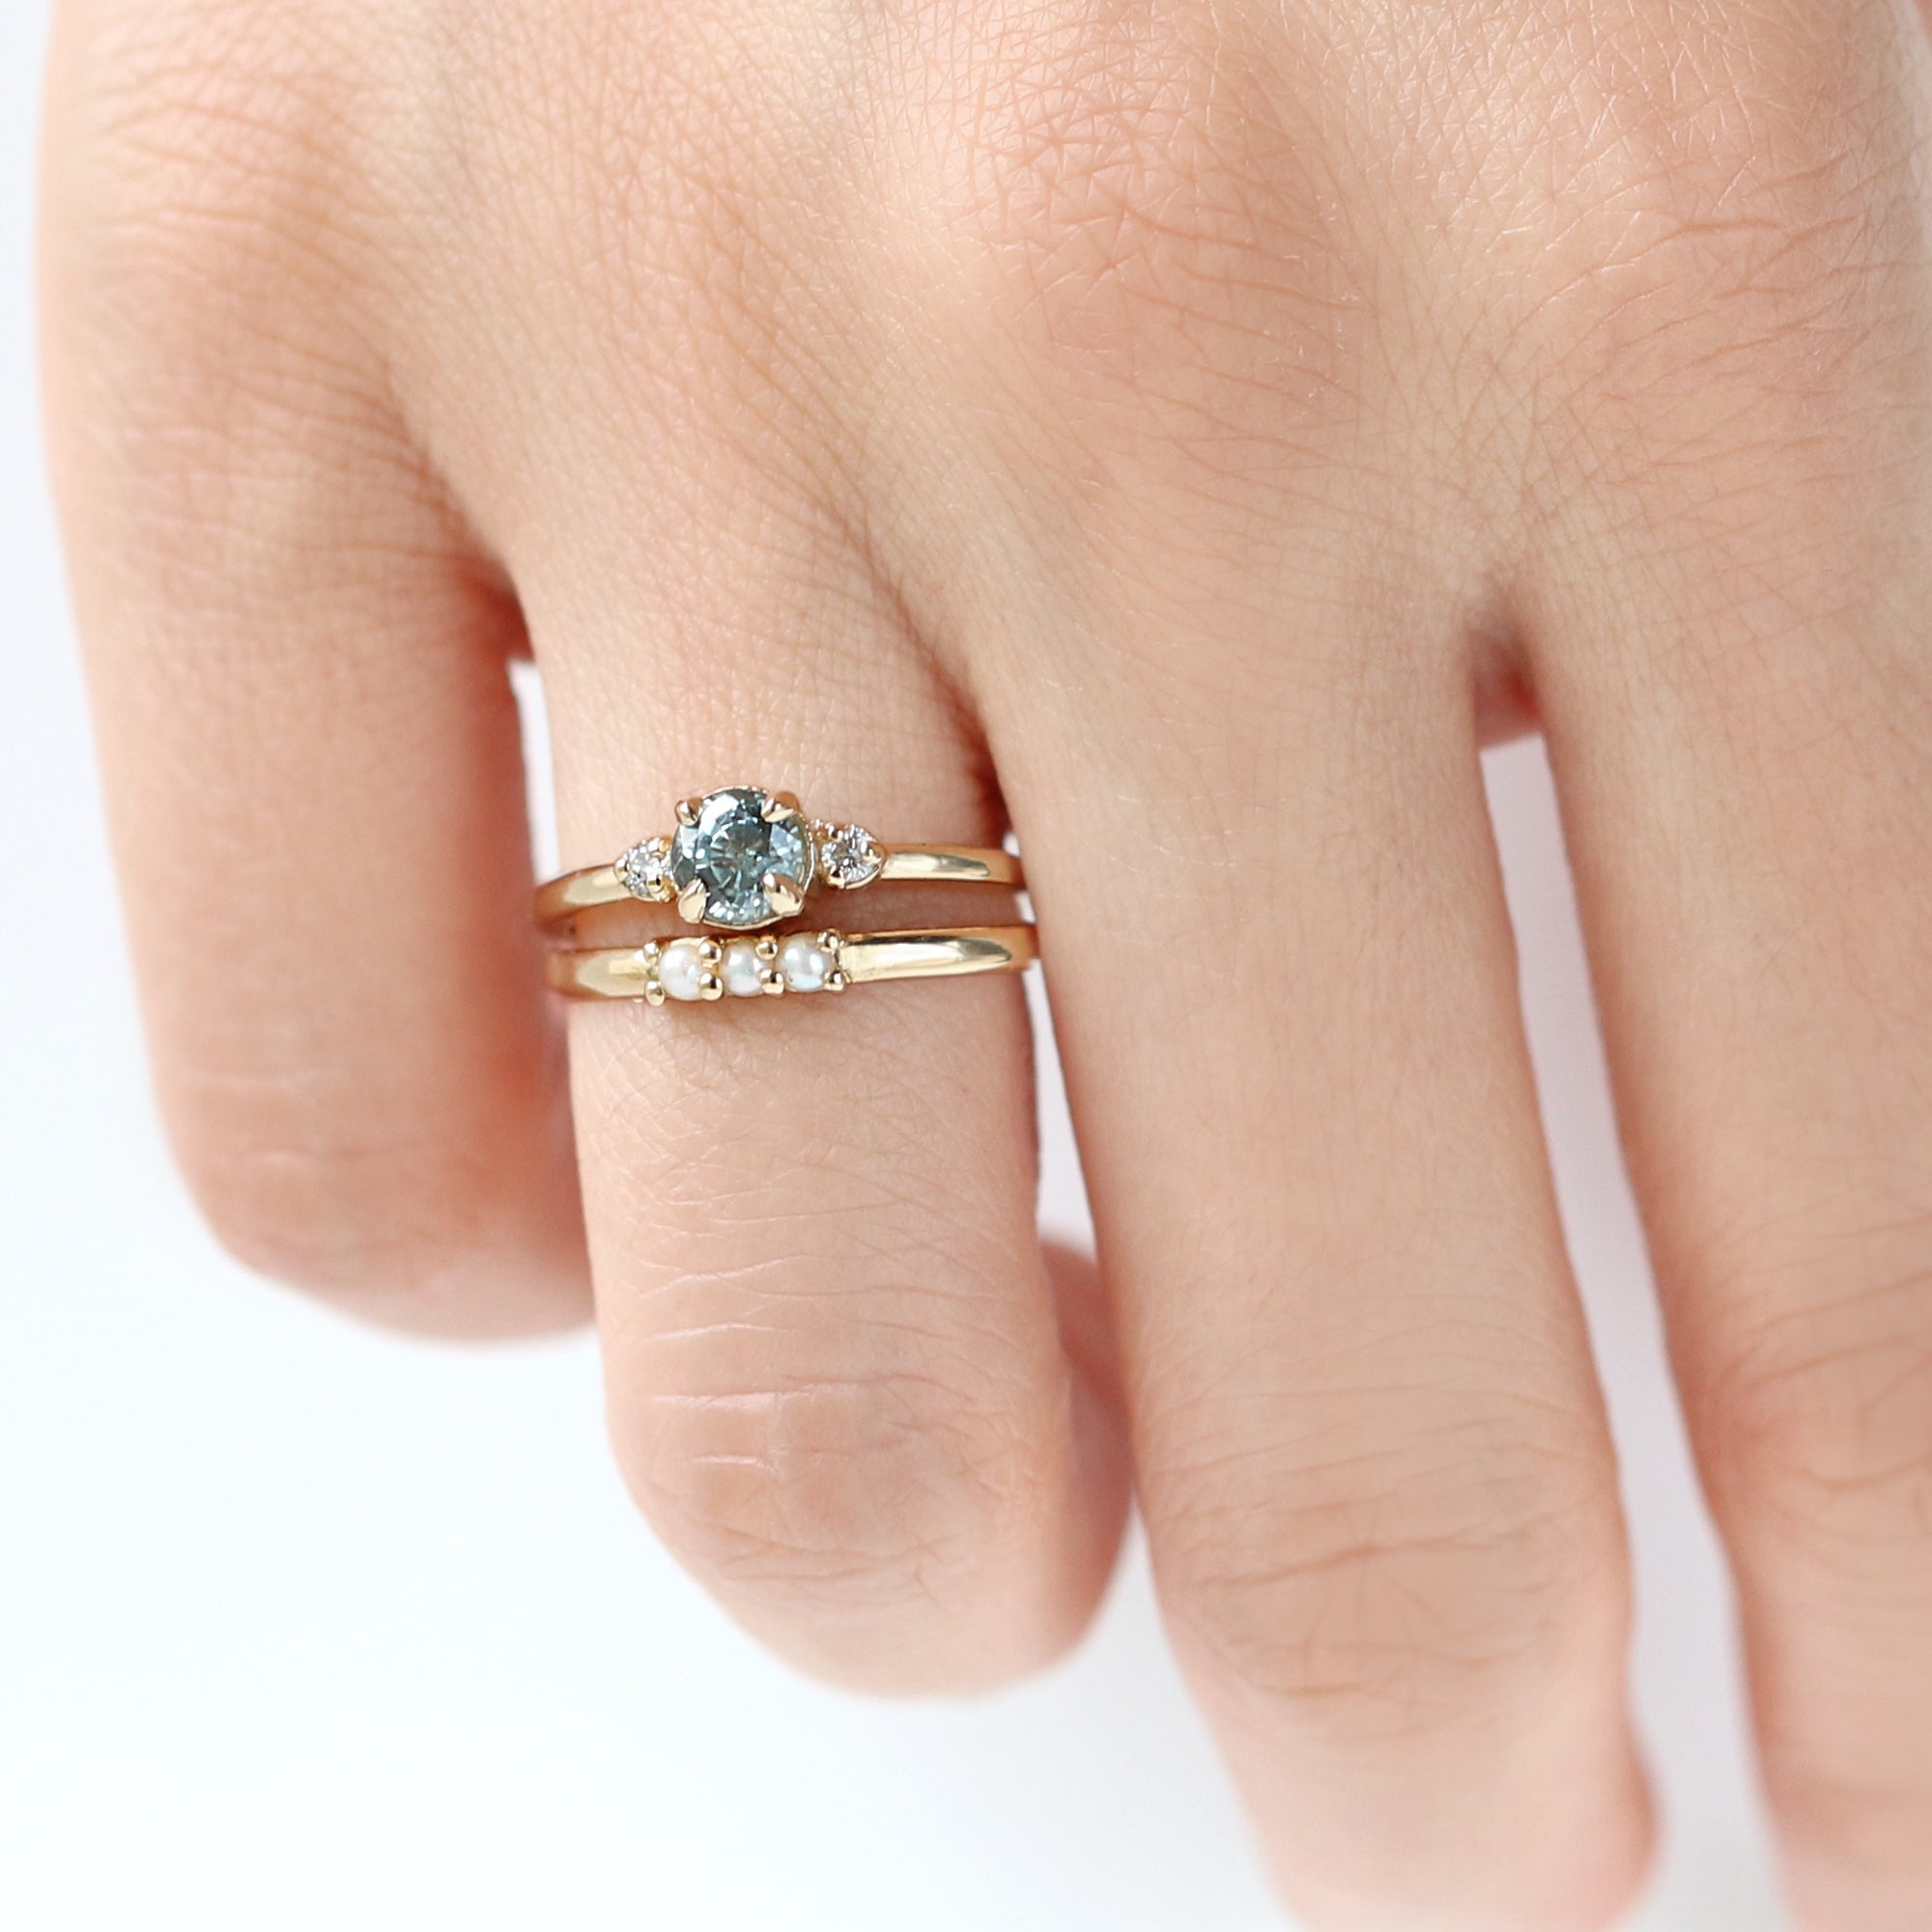 Jamie Park Jewelry - Montana Teal Sapphire Diamond Ring